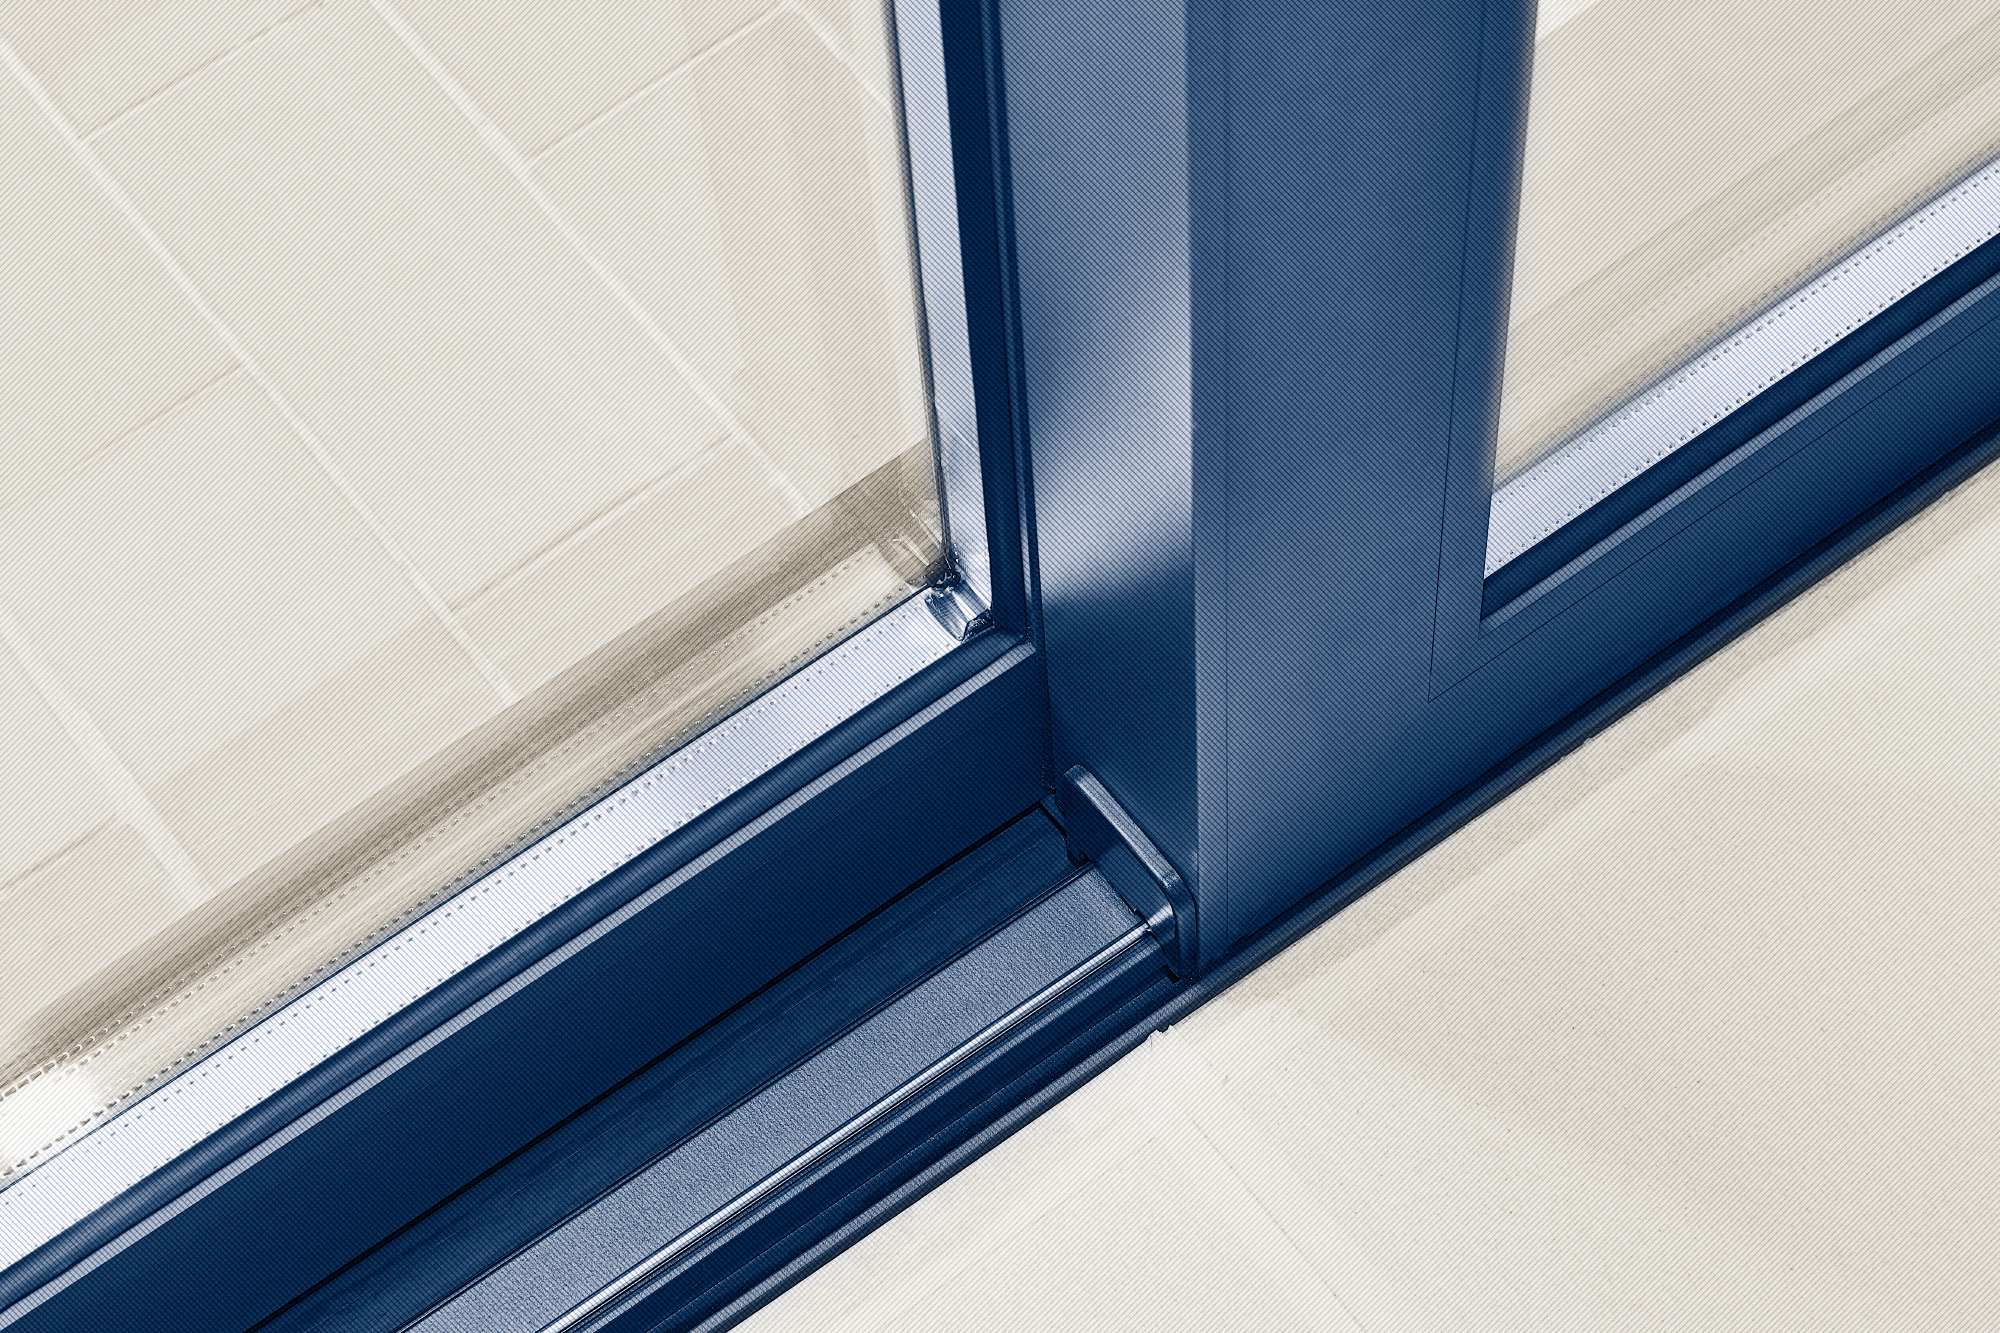 Elegantna PVC okna so prava izbira za vaše stanovanje